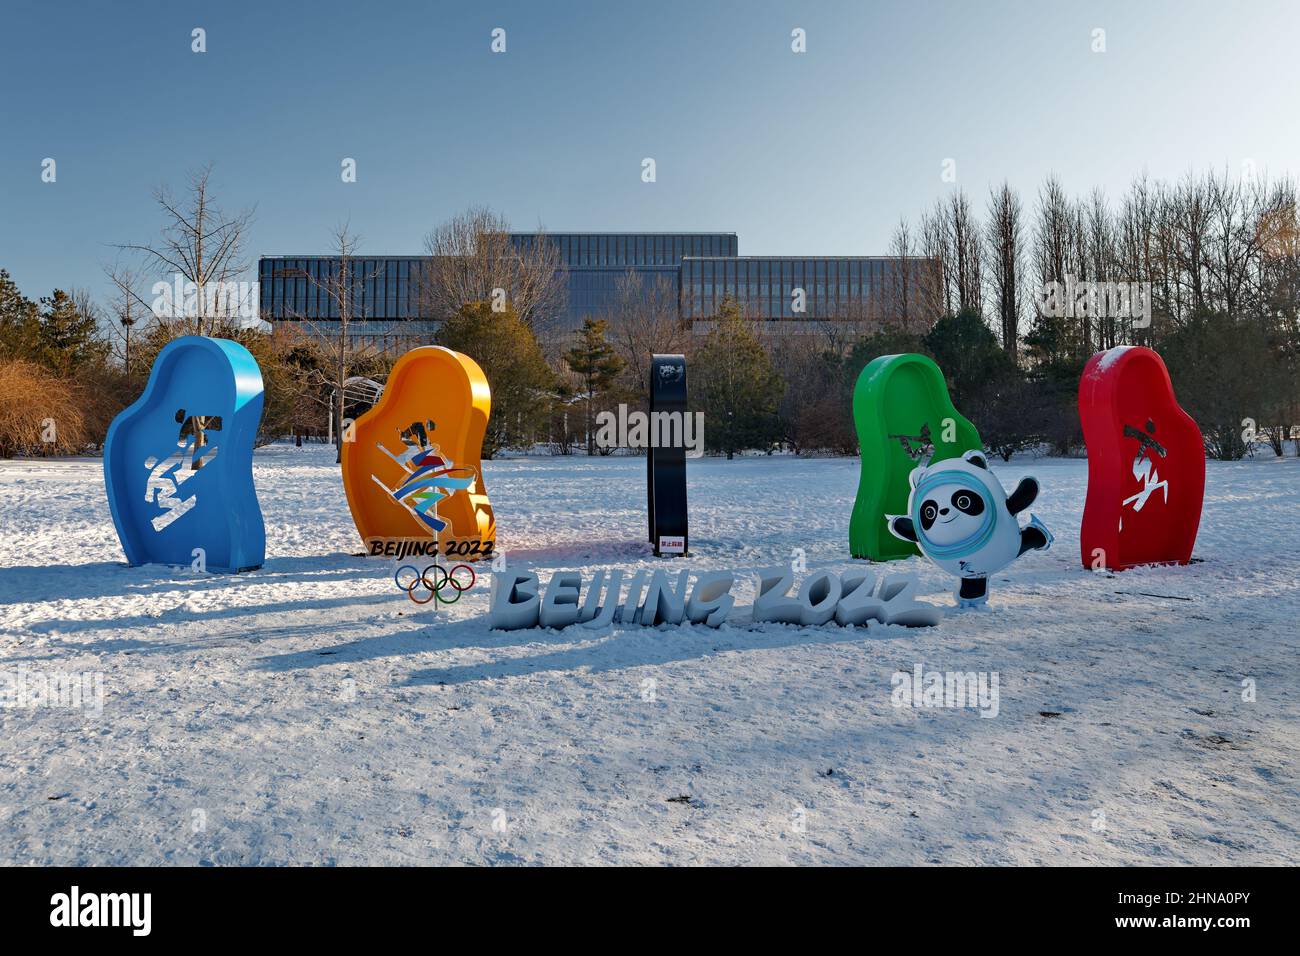 La segnaletica delle Olimpiadi invernali di Pechino 2022 e delle mascotte al parco di Pechino in Cina il 14,2022 febbraio Foto Stock